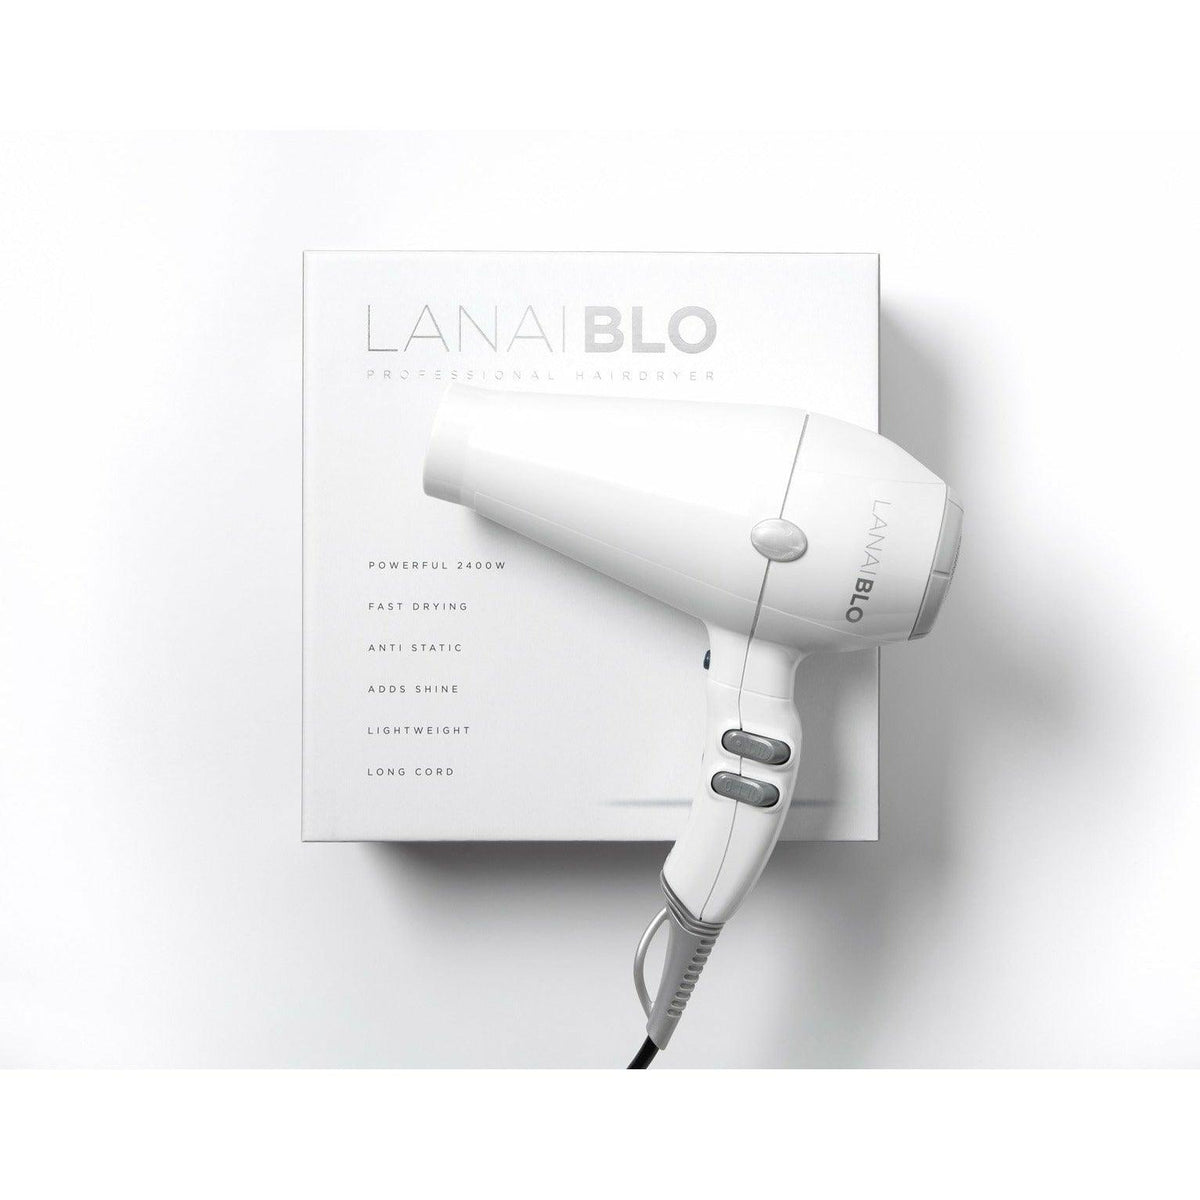 Lanaiblo 2400W Hair Dryer - White | LANAIBLOWHITE (7212232605884)